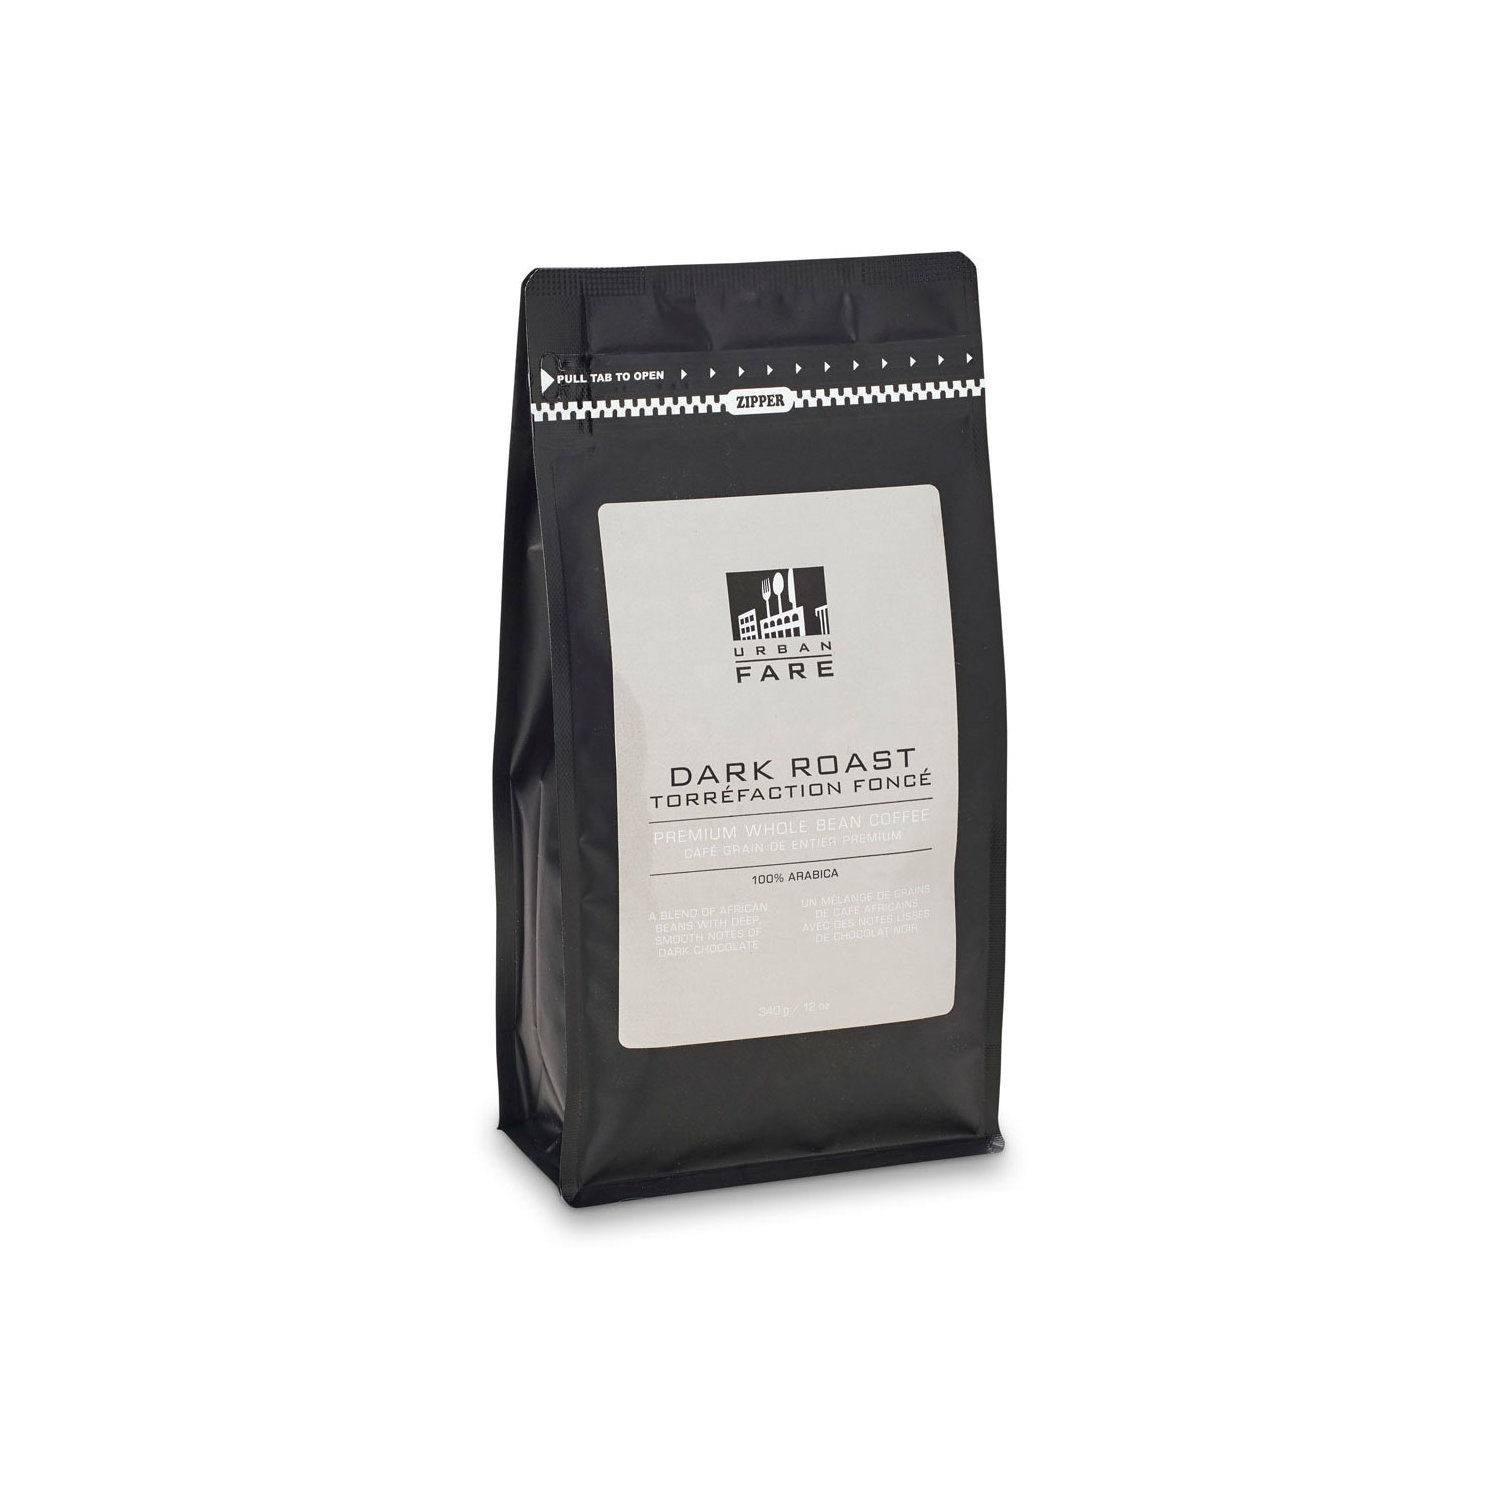 Starbucks Espresso Dark Roast Coffee - grains de café - 4 sacs de